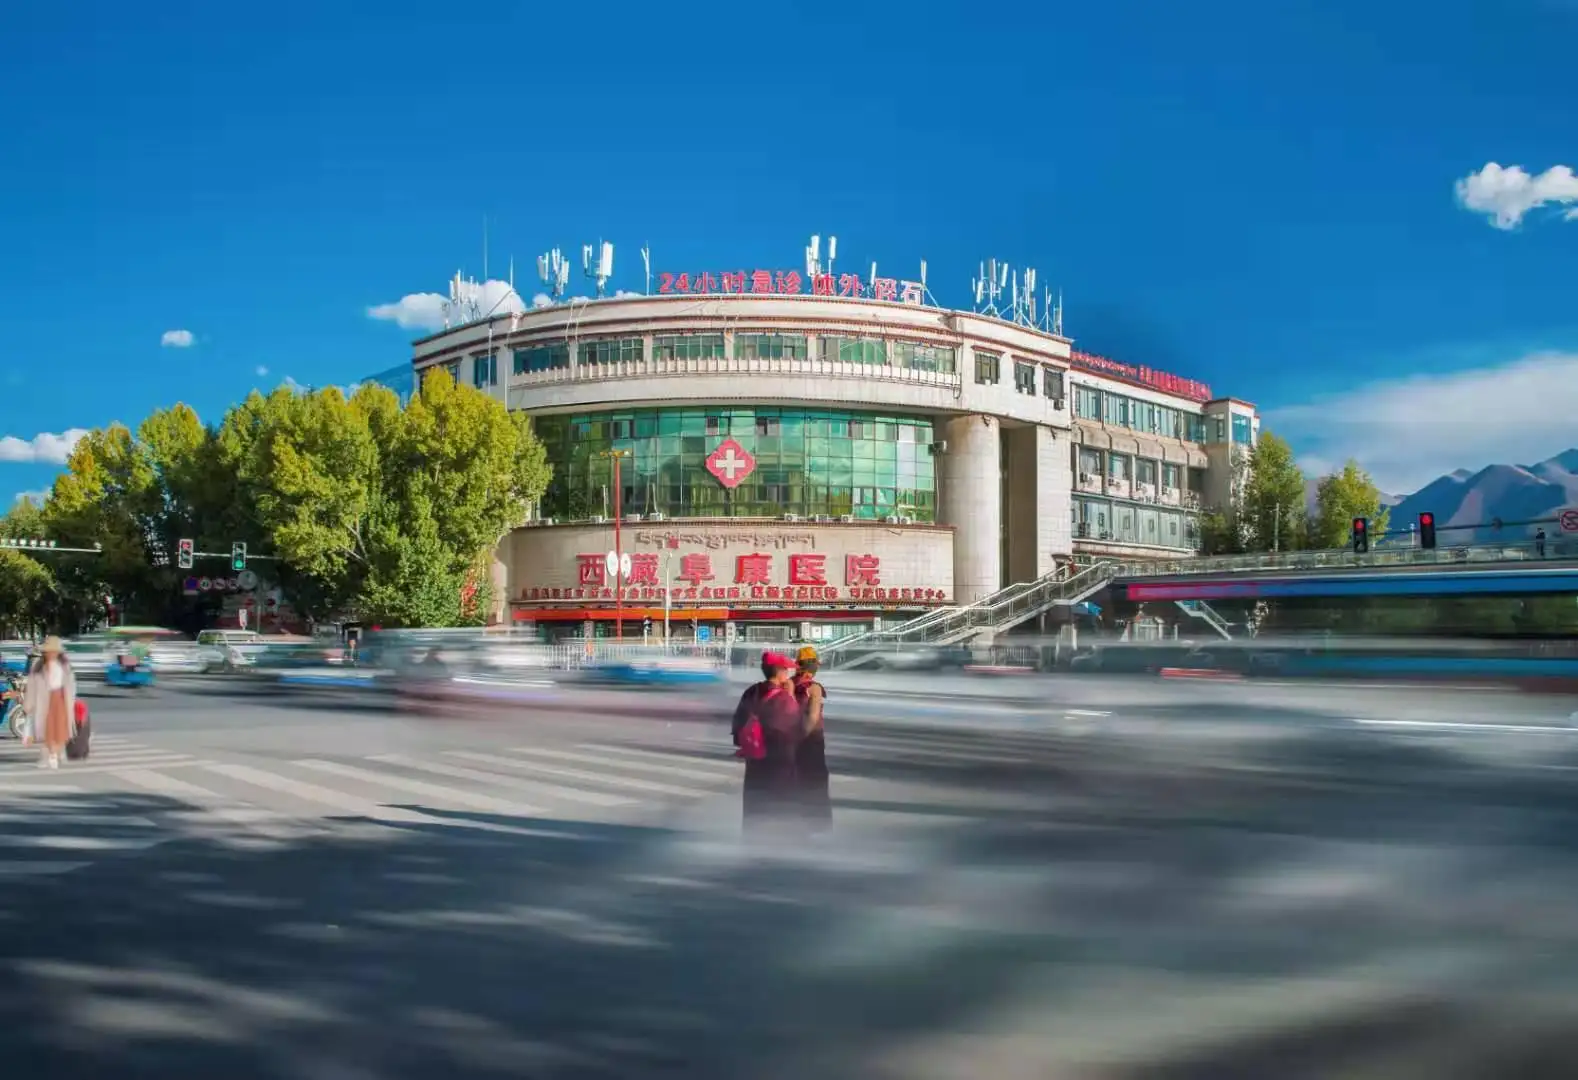 西藏阜康医院